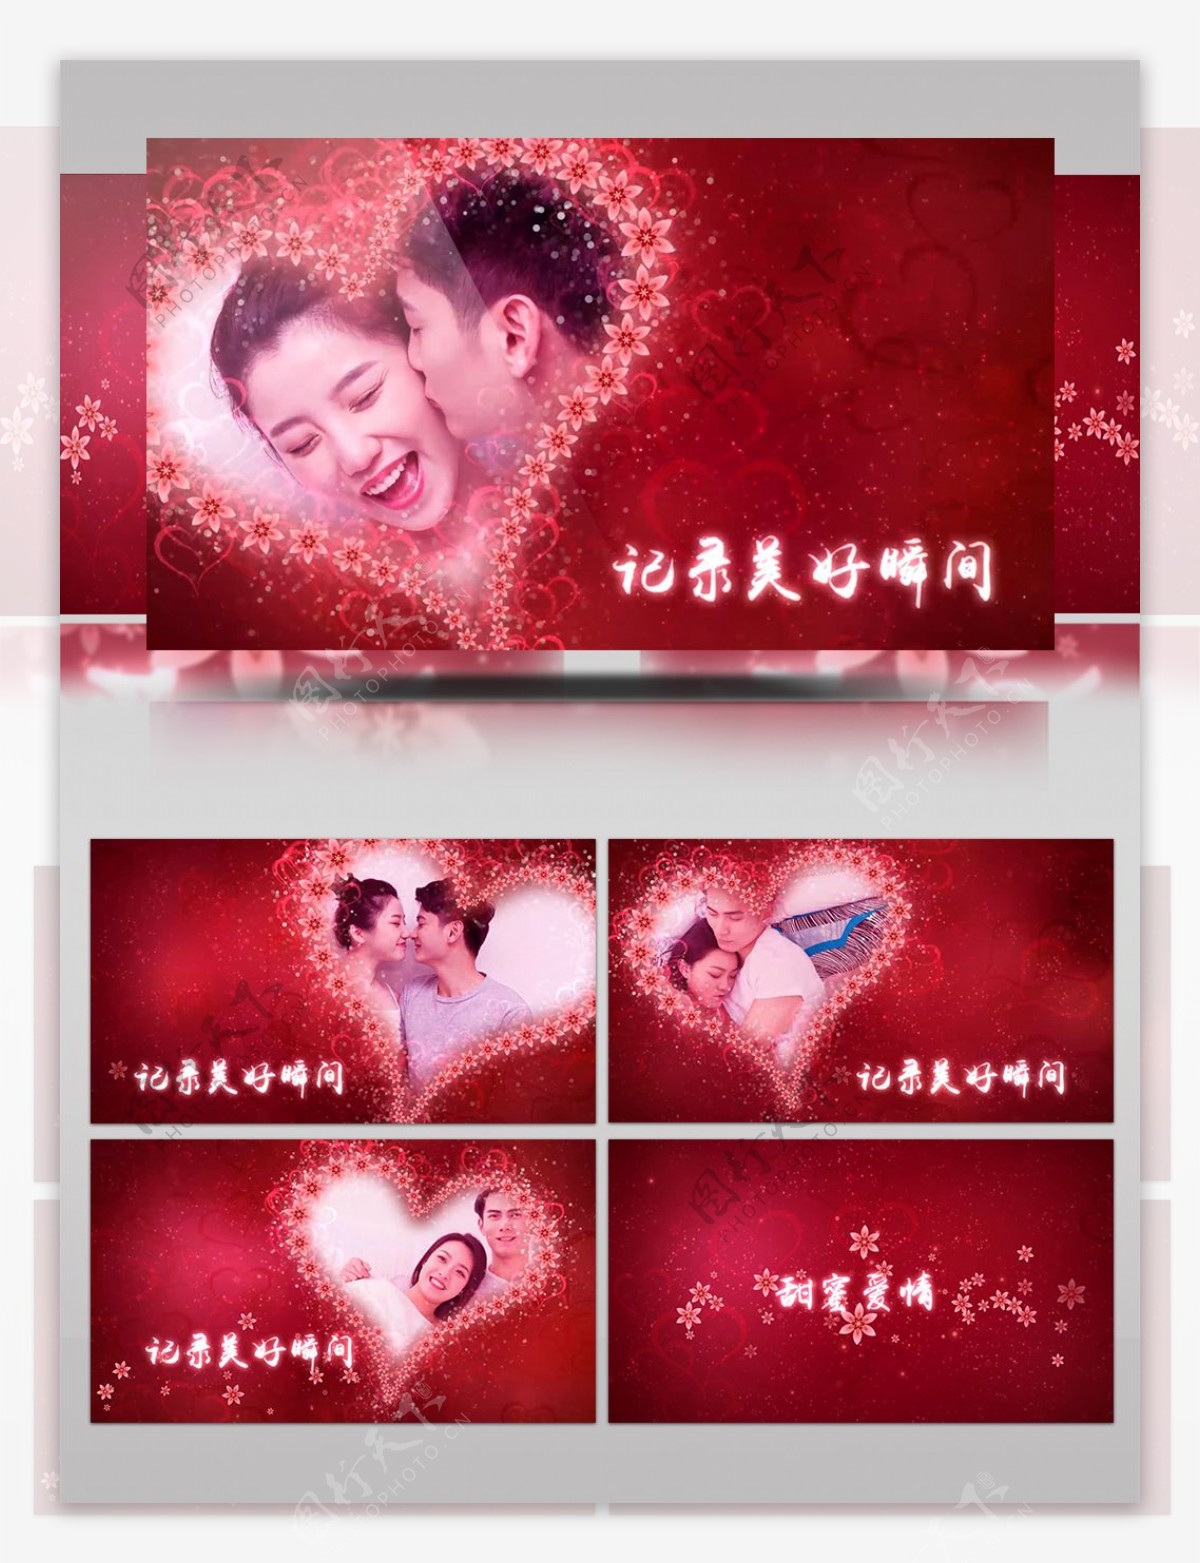 大红色喜庆的传统婚礼电子纪念相册AE模板